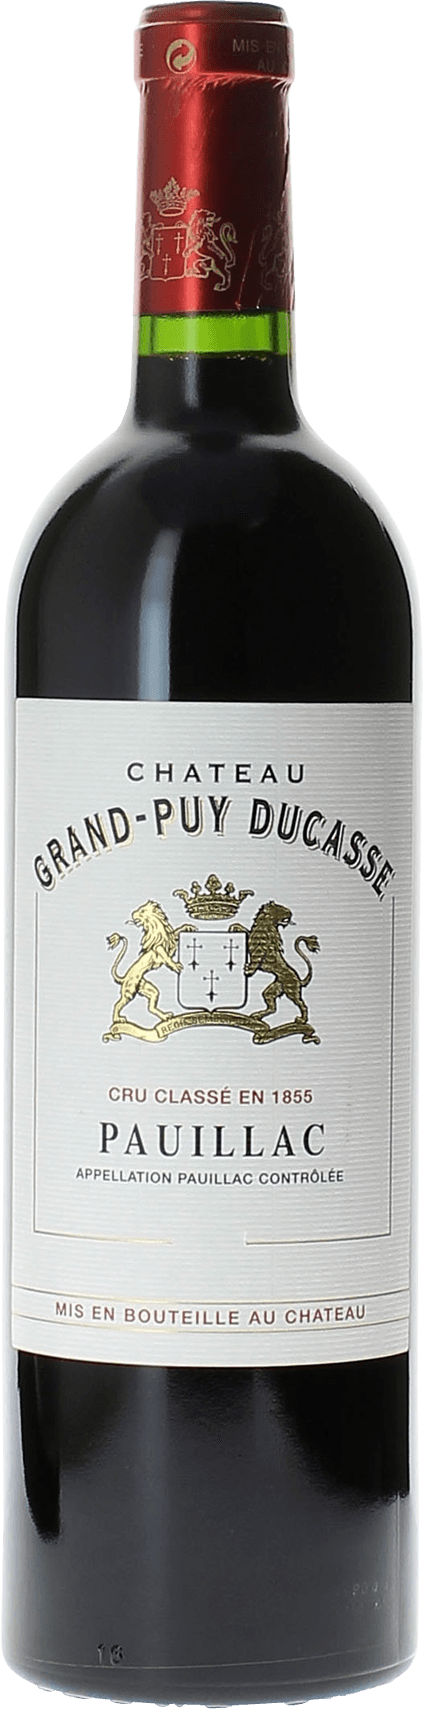 Grand puy ducasse 1998 5 me Grand cru class Pauillac, Bordeaux rouge